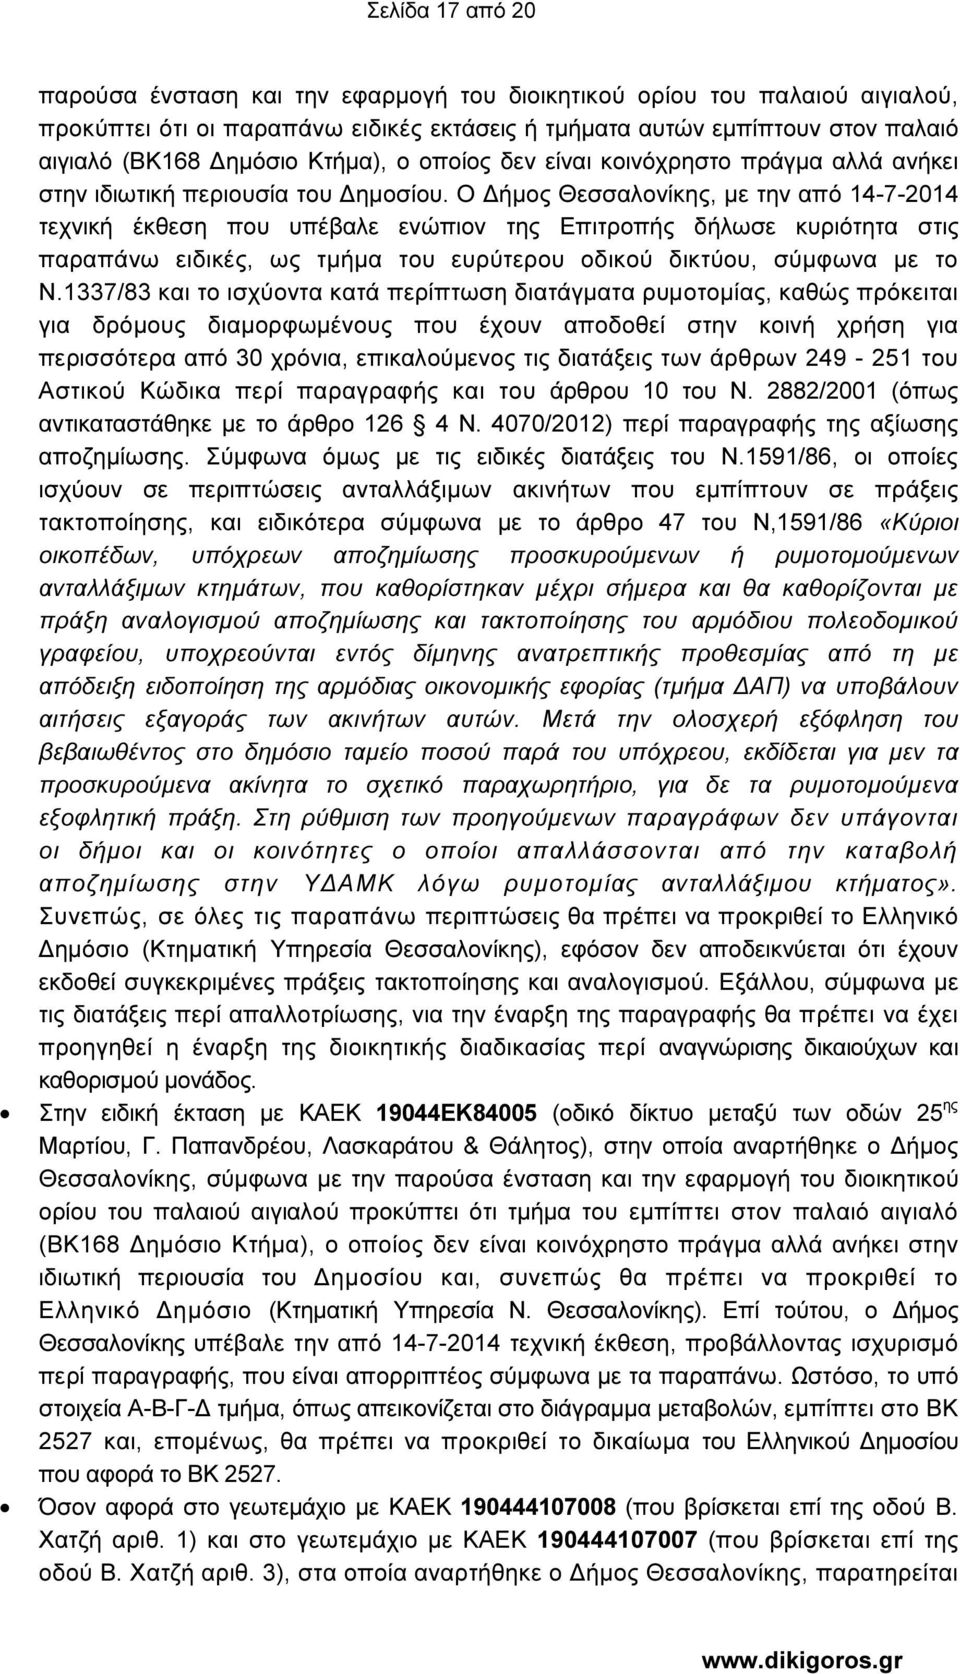 Ο ήµος Θεσσαλονίκης, µε την από 14-7-2014 τεχνική έκθεση που υπέβαλε ενώπιον της Επιτροπής δήλωσε κυριότητα στις παραπάνω ειδικές, ως τµήµα του ευρύτερου οδικού δικτύου, σύµφωνα µε το Ν.